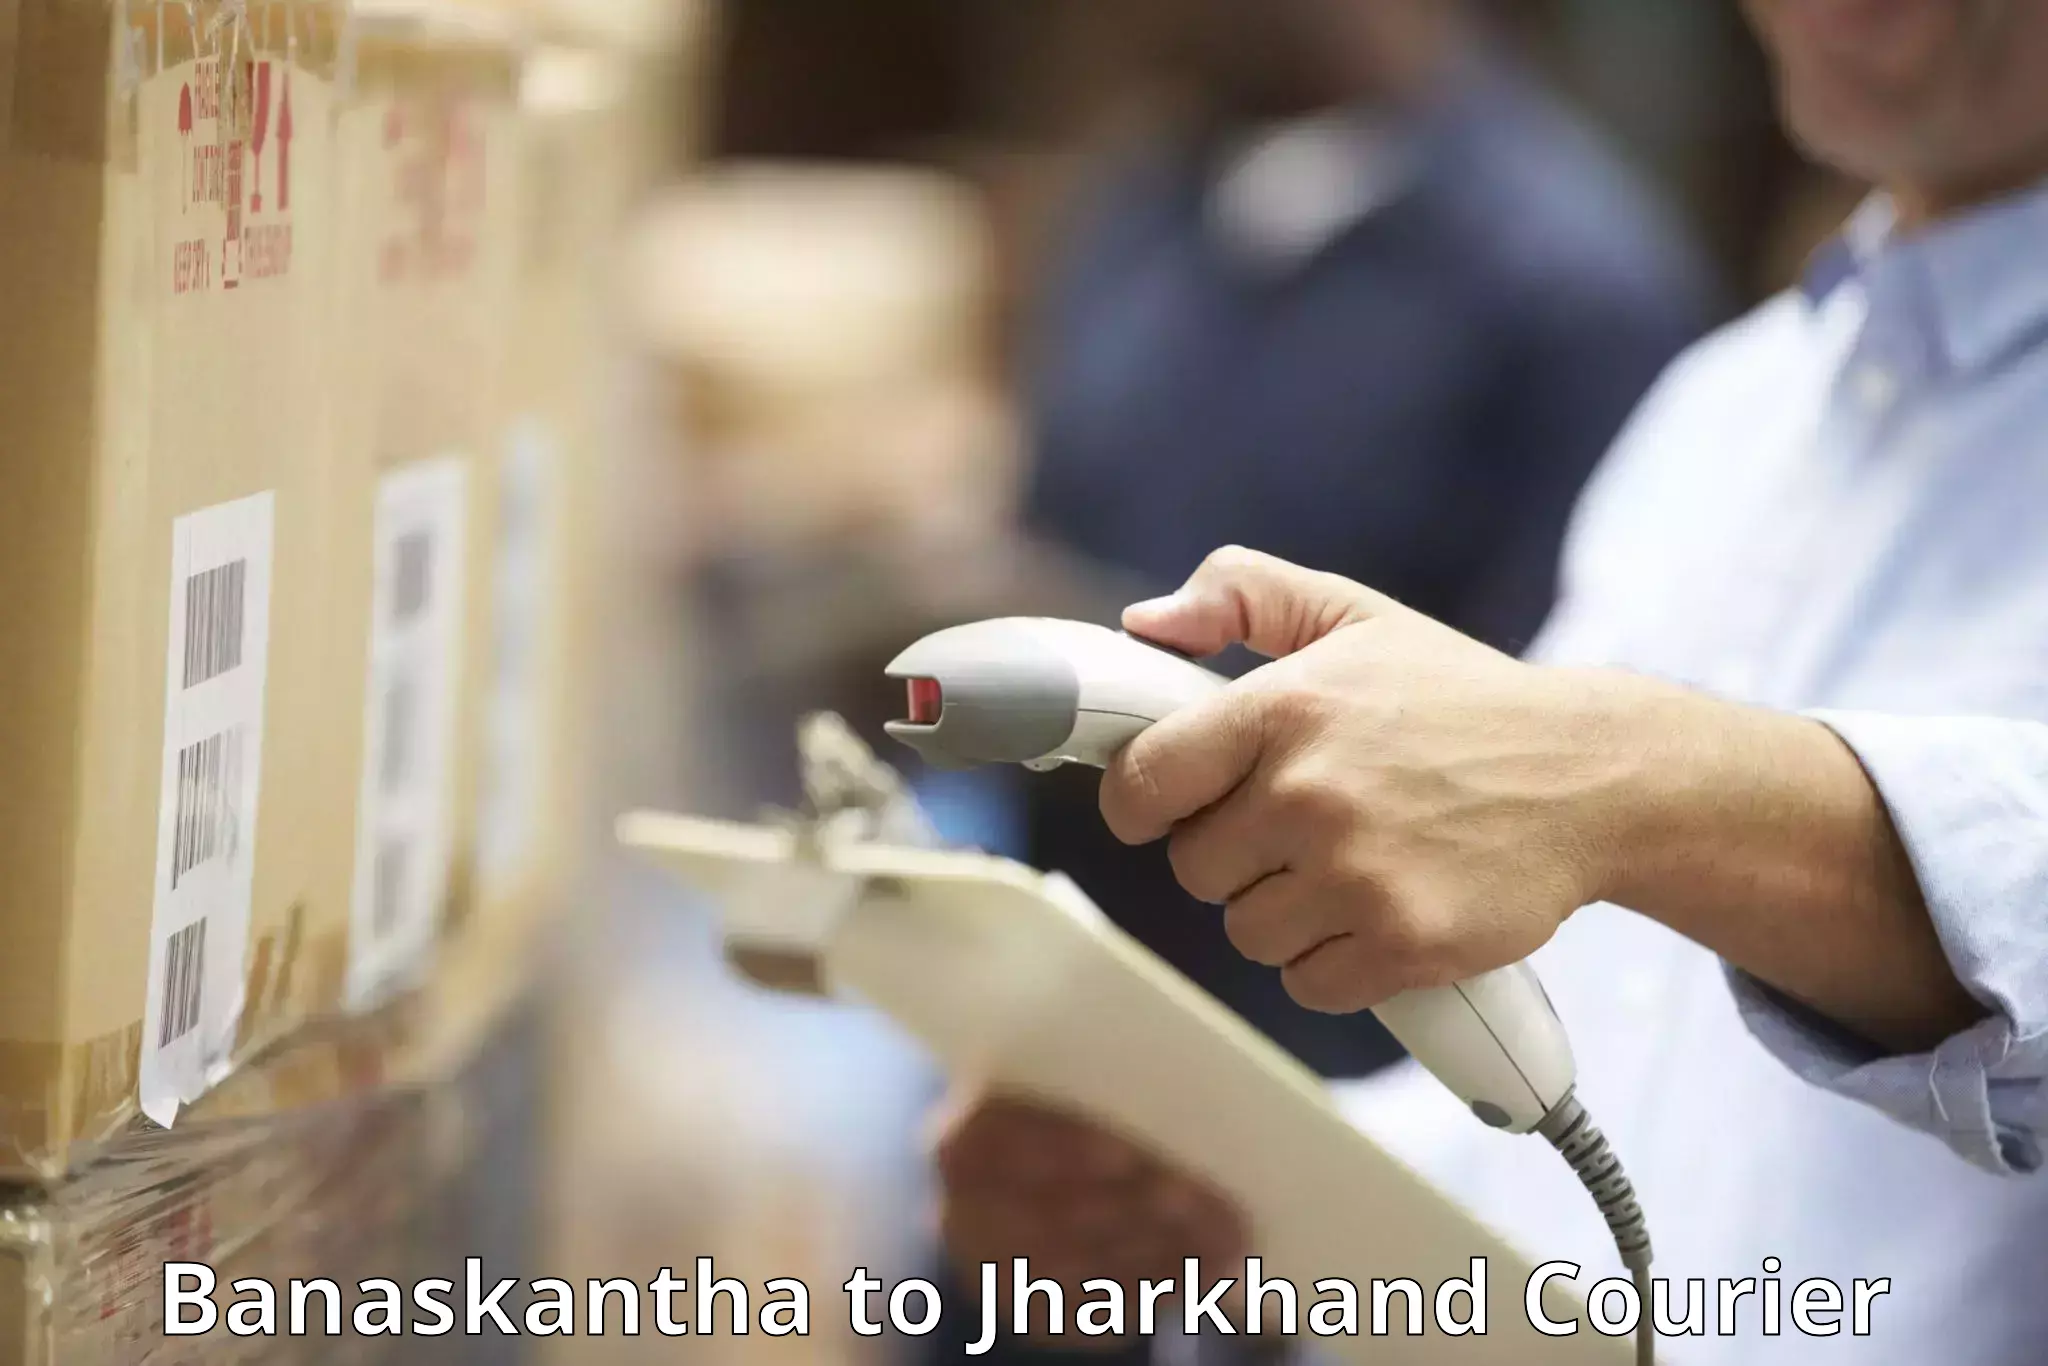 Baggage shipping advice Banaskantha to Godabar Chatra